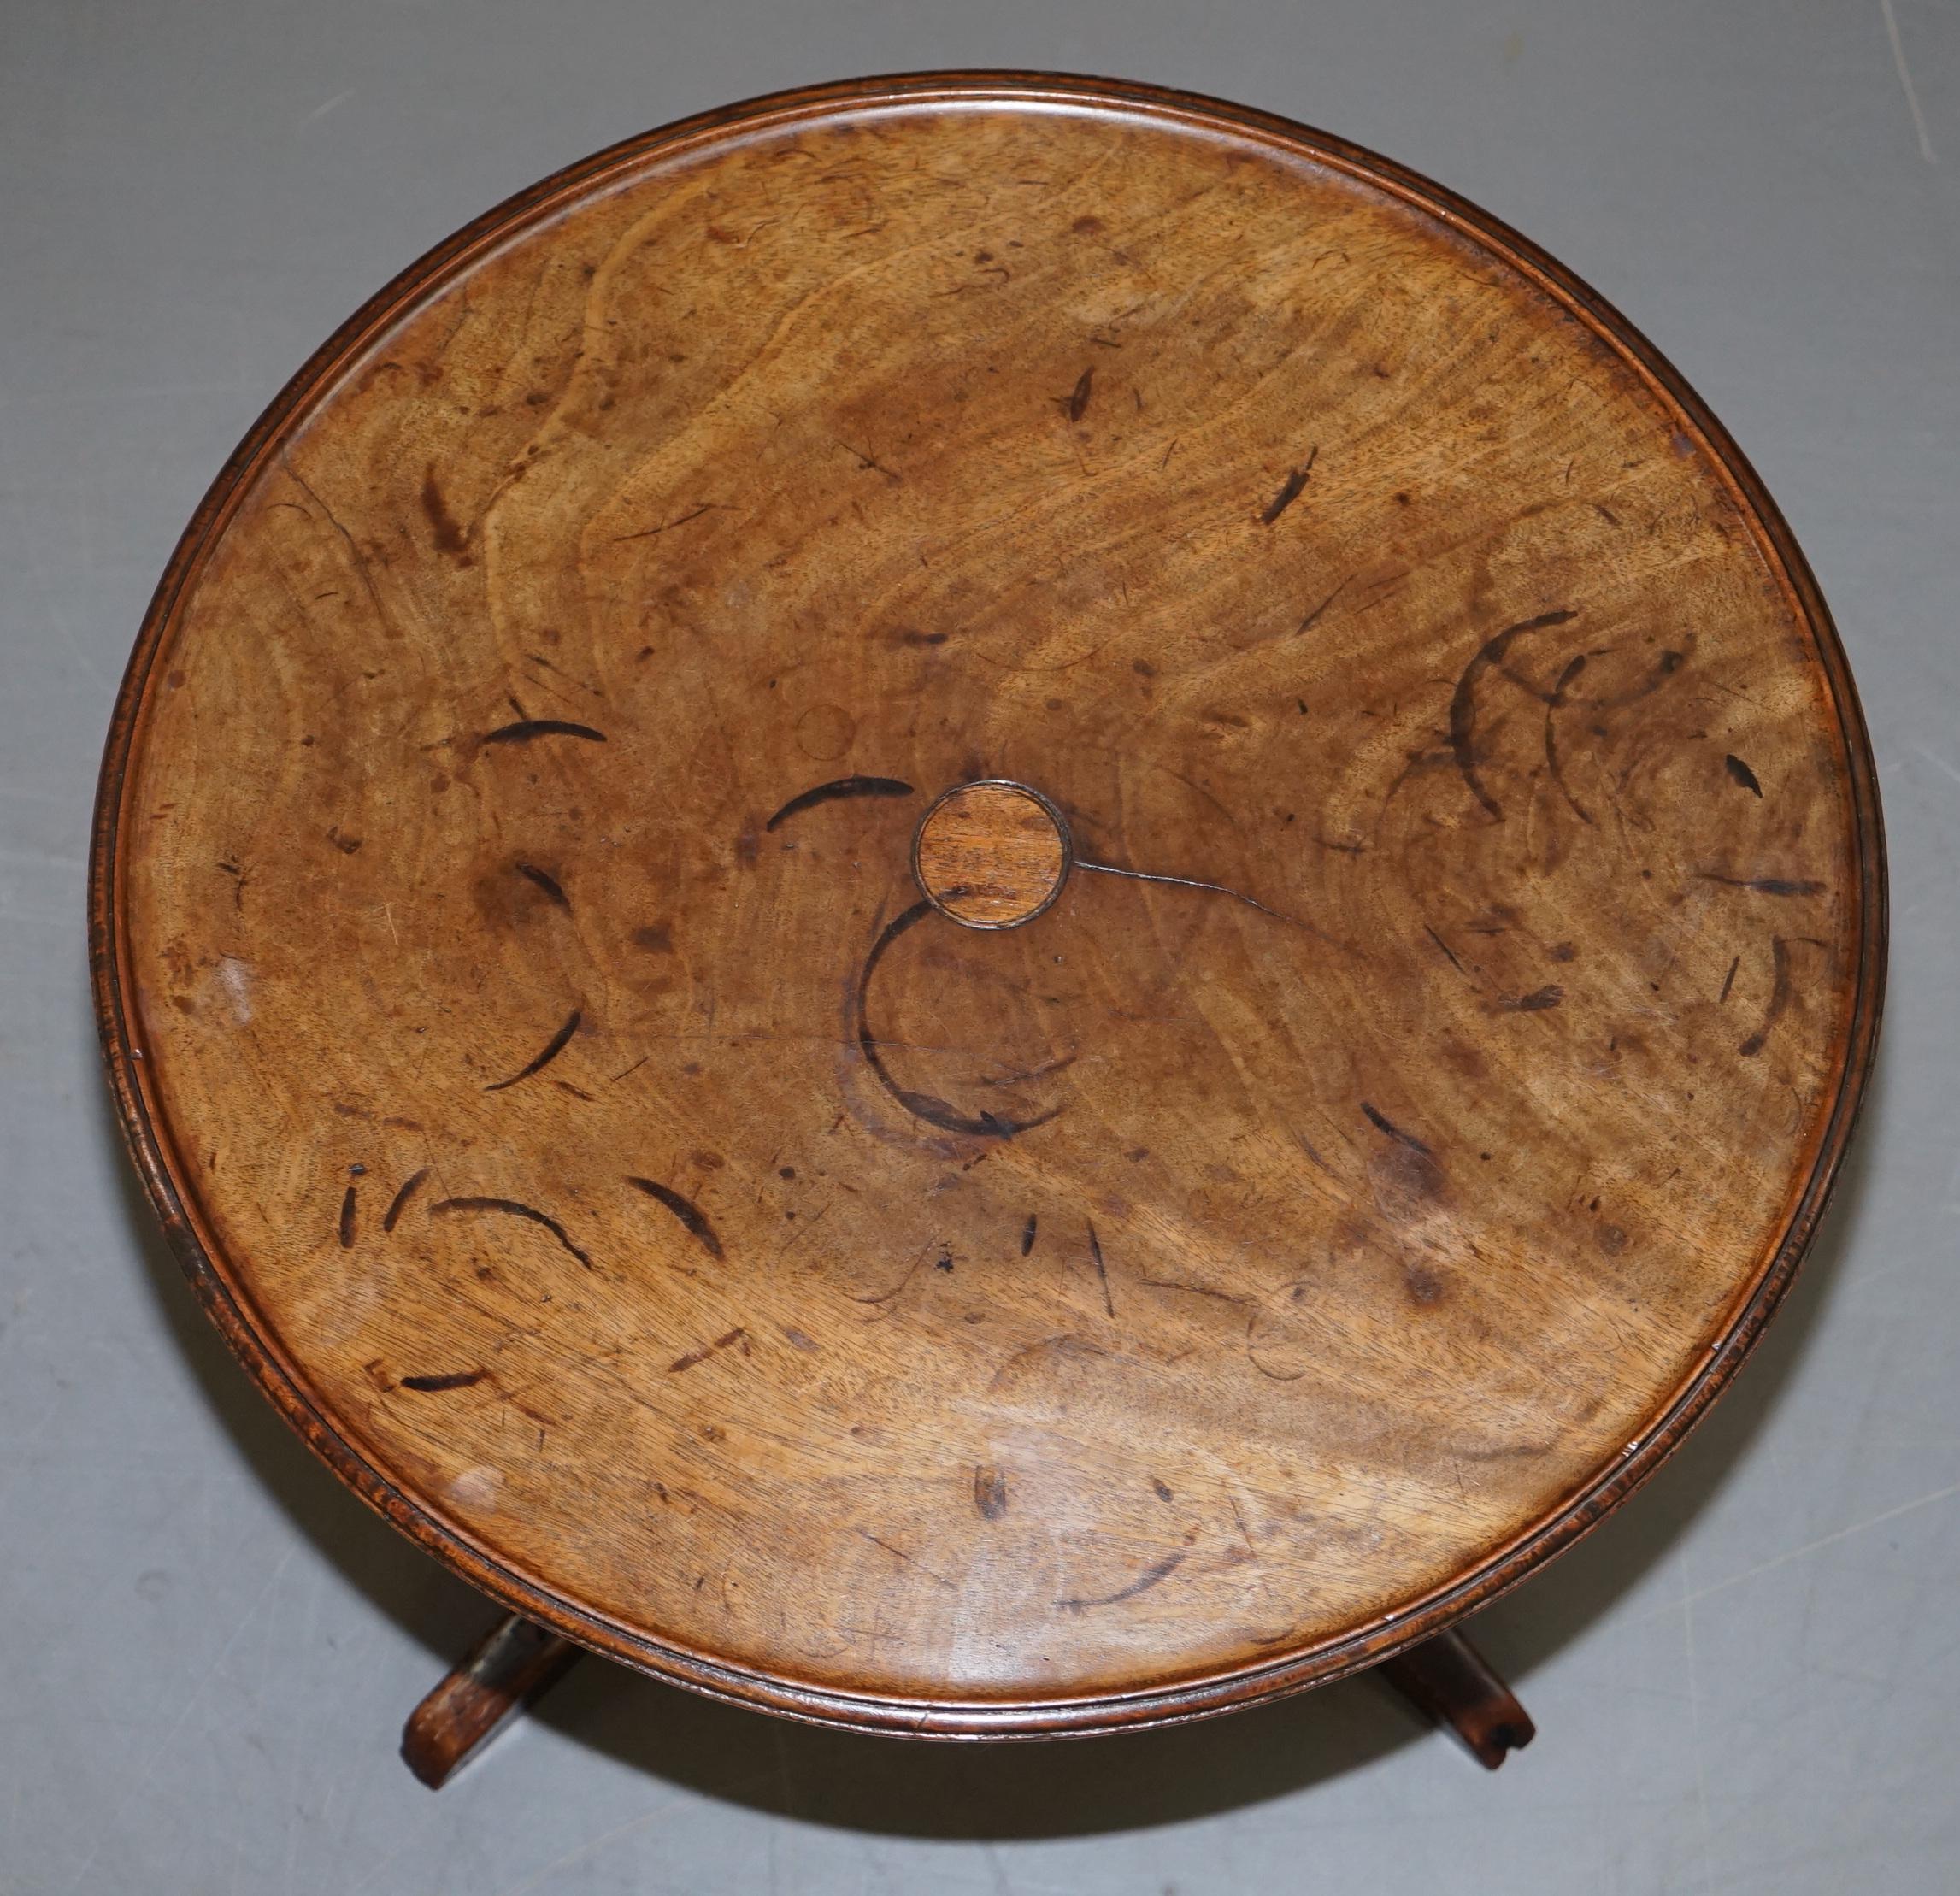 Nous sommes ravis d'offrir à la vente cette table à vin ronde avec lampe d'extrémité, datant du début de l'ère victorienne, datant d'environ 1840, avec beaucoup de patine

Une table très décorative et d'époque, la pièce a beaucoup de réparations